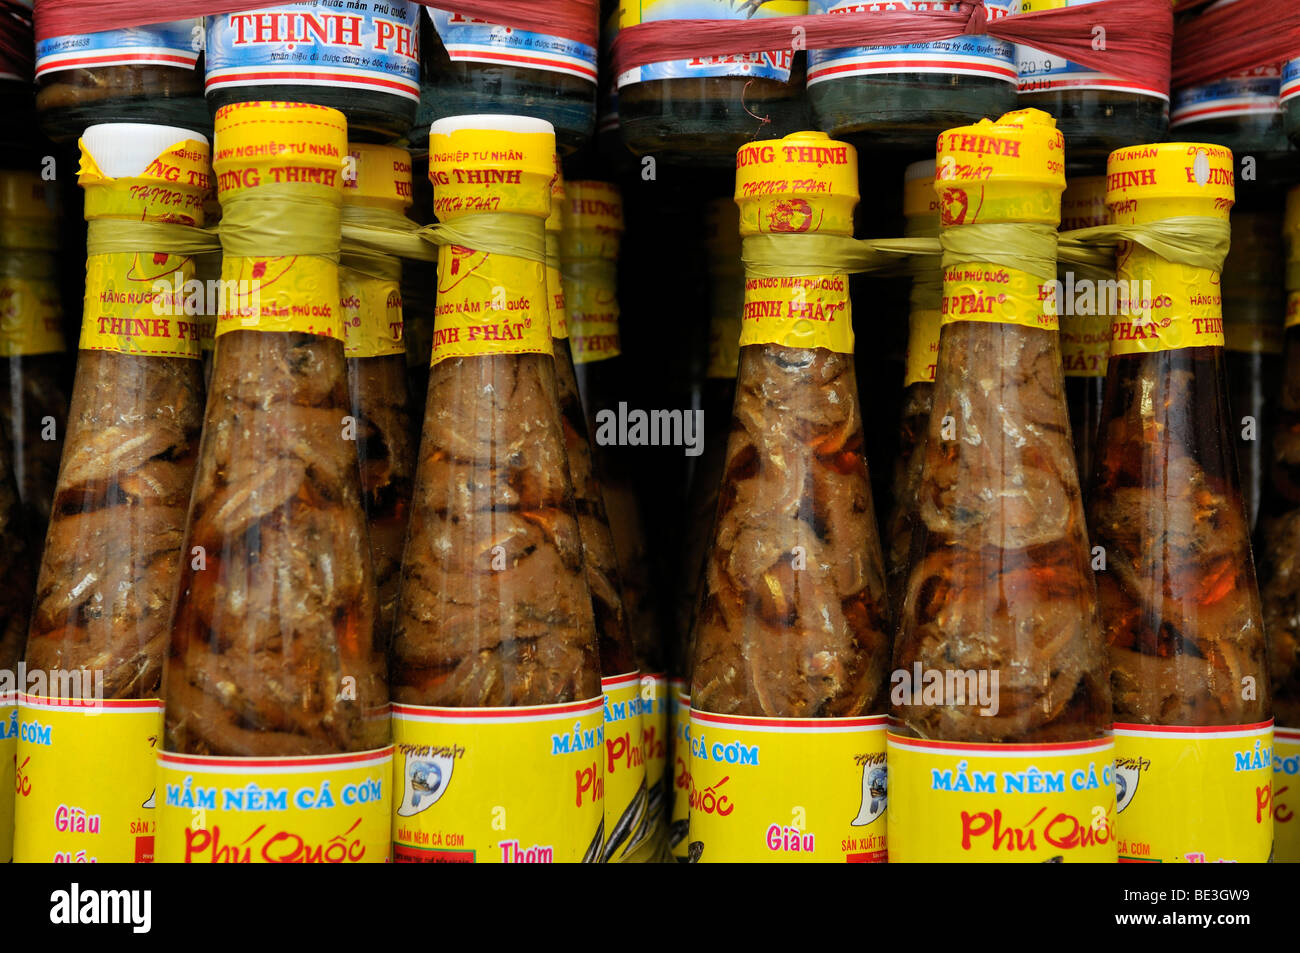 Regal mit dem traditionellen vietnamesischen Fisch sauce Nuoc Mam in Glasflaschen mit gelben Kunststoff-Kappe, Phu Quoc, Vietnam, Asien Stockfoto